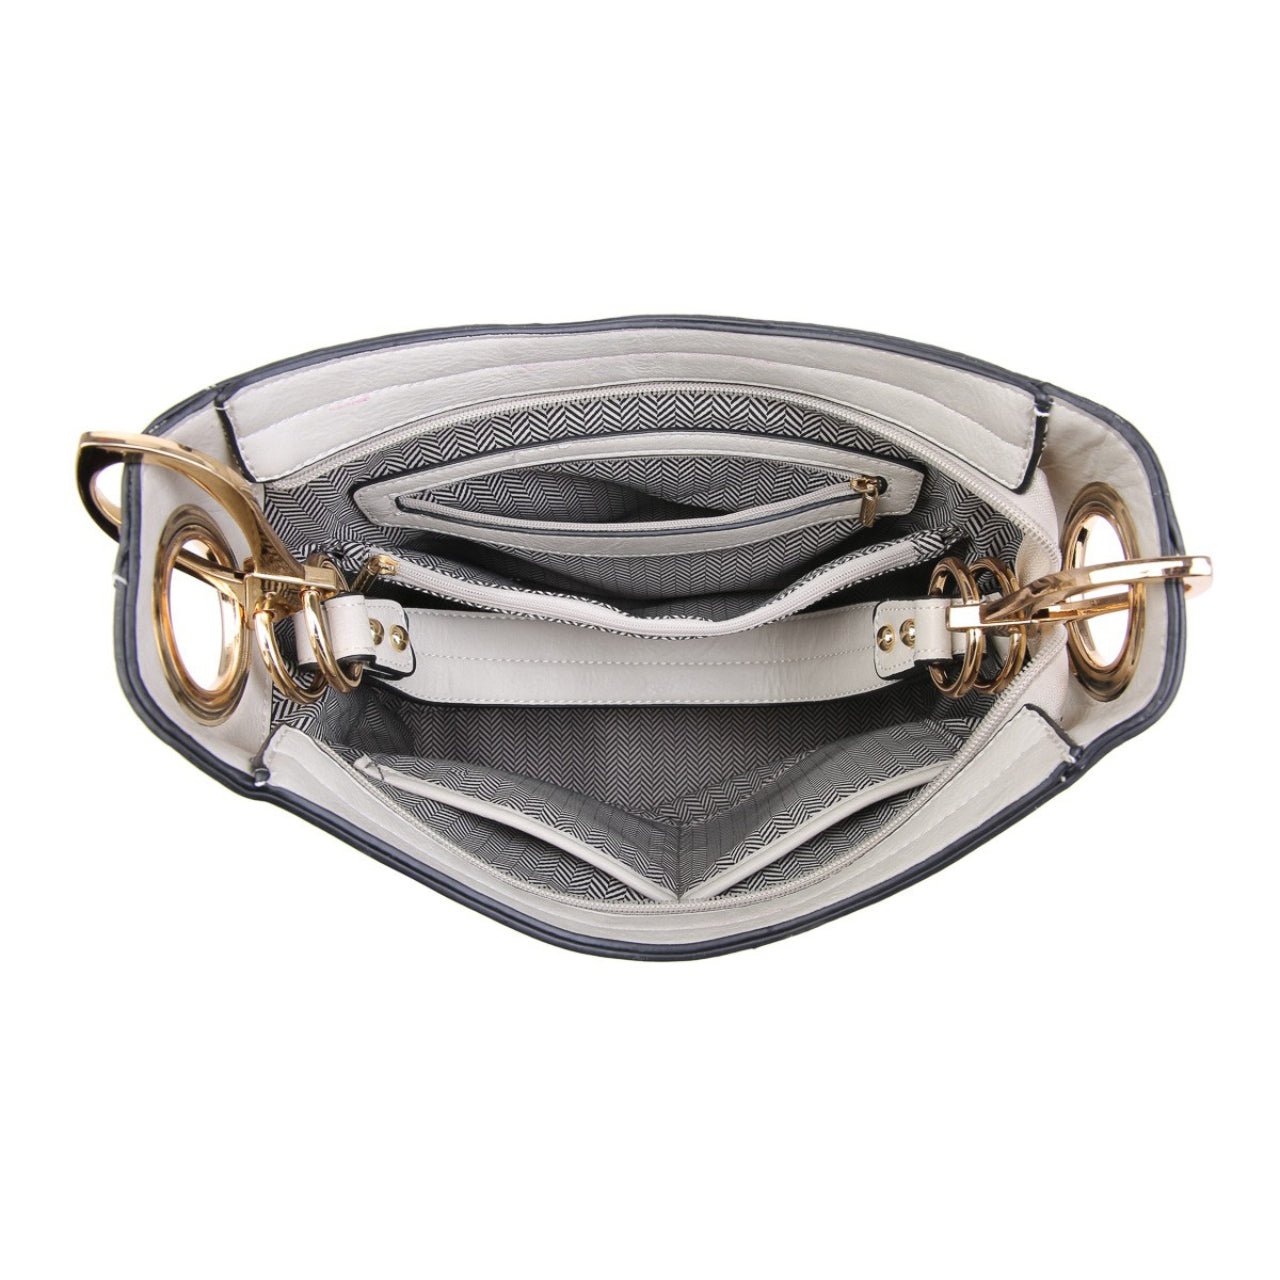 Rochelle Side Zip Hobo Handbag - The Graphic Tee